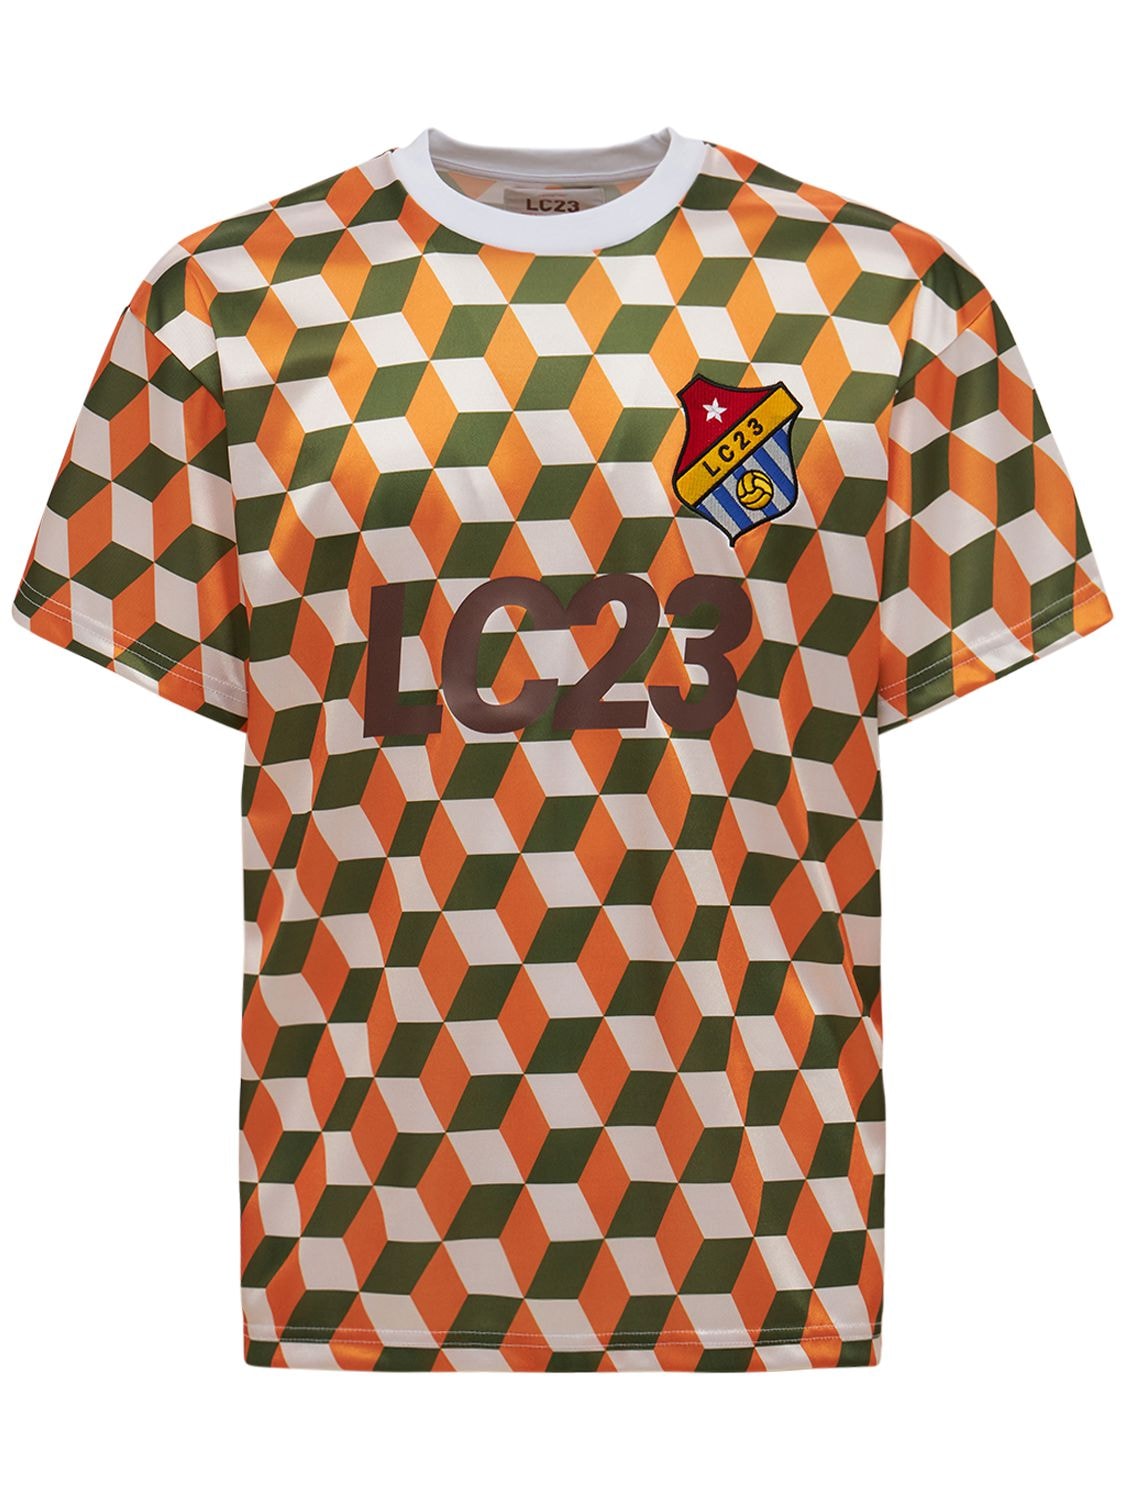 3d Football Jersey T-shirt